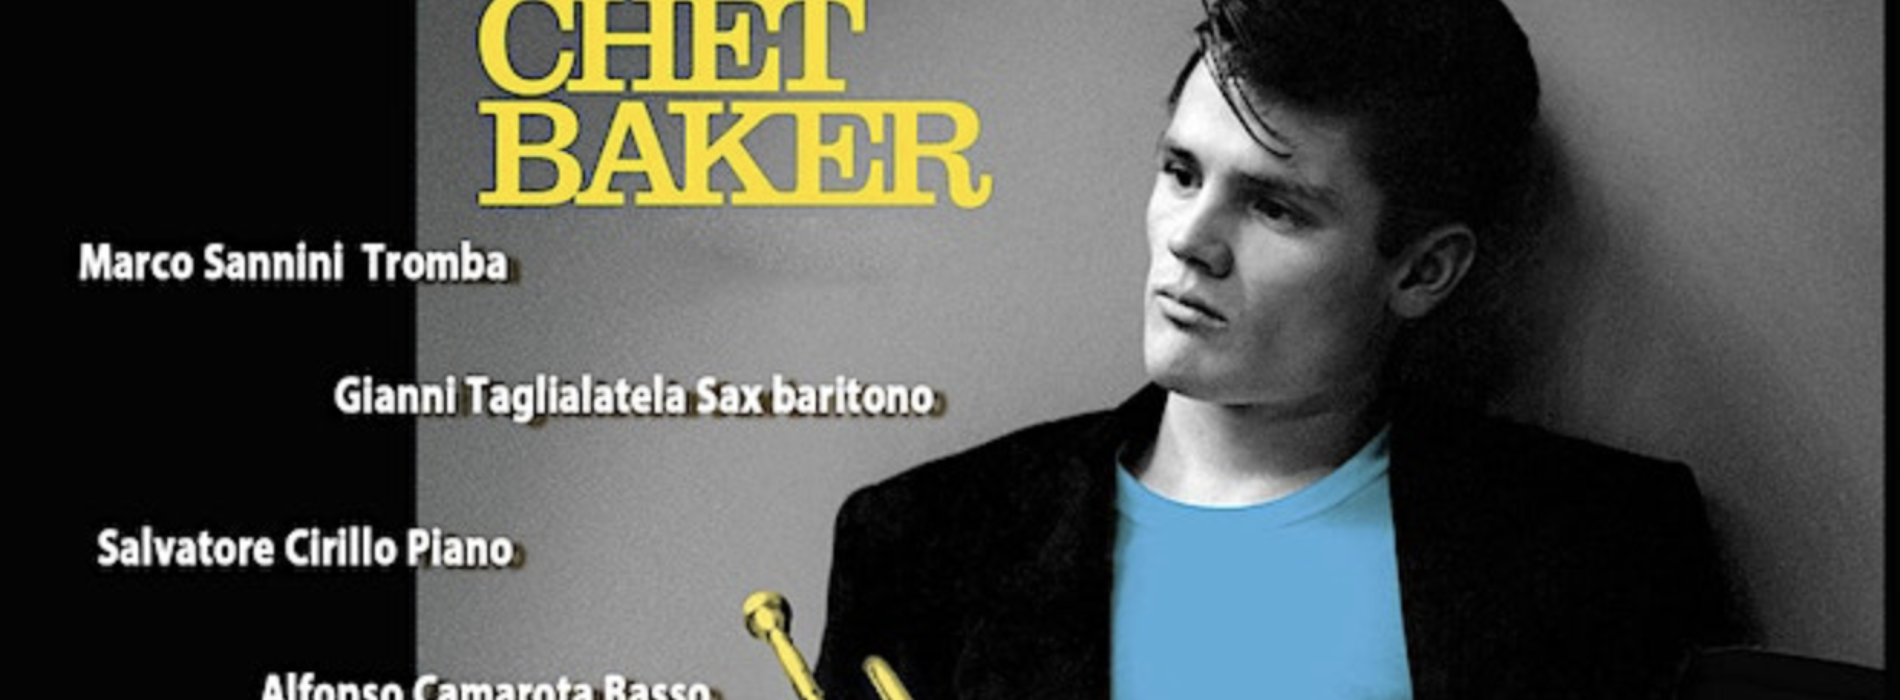 Feelix Caserta. Racconti di jazz/Chet Baker, musica e aneddoti